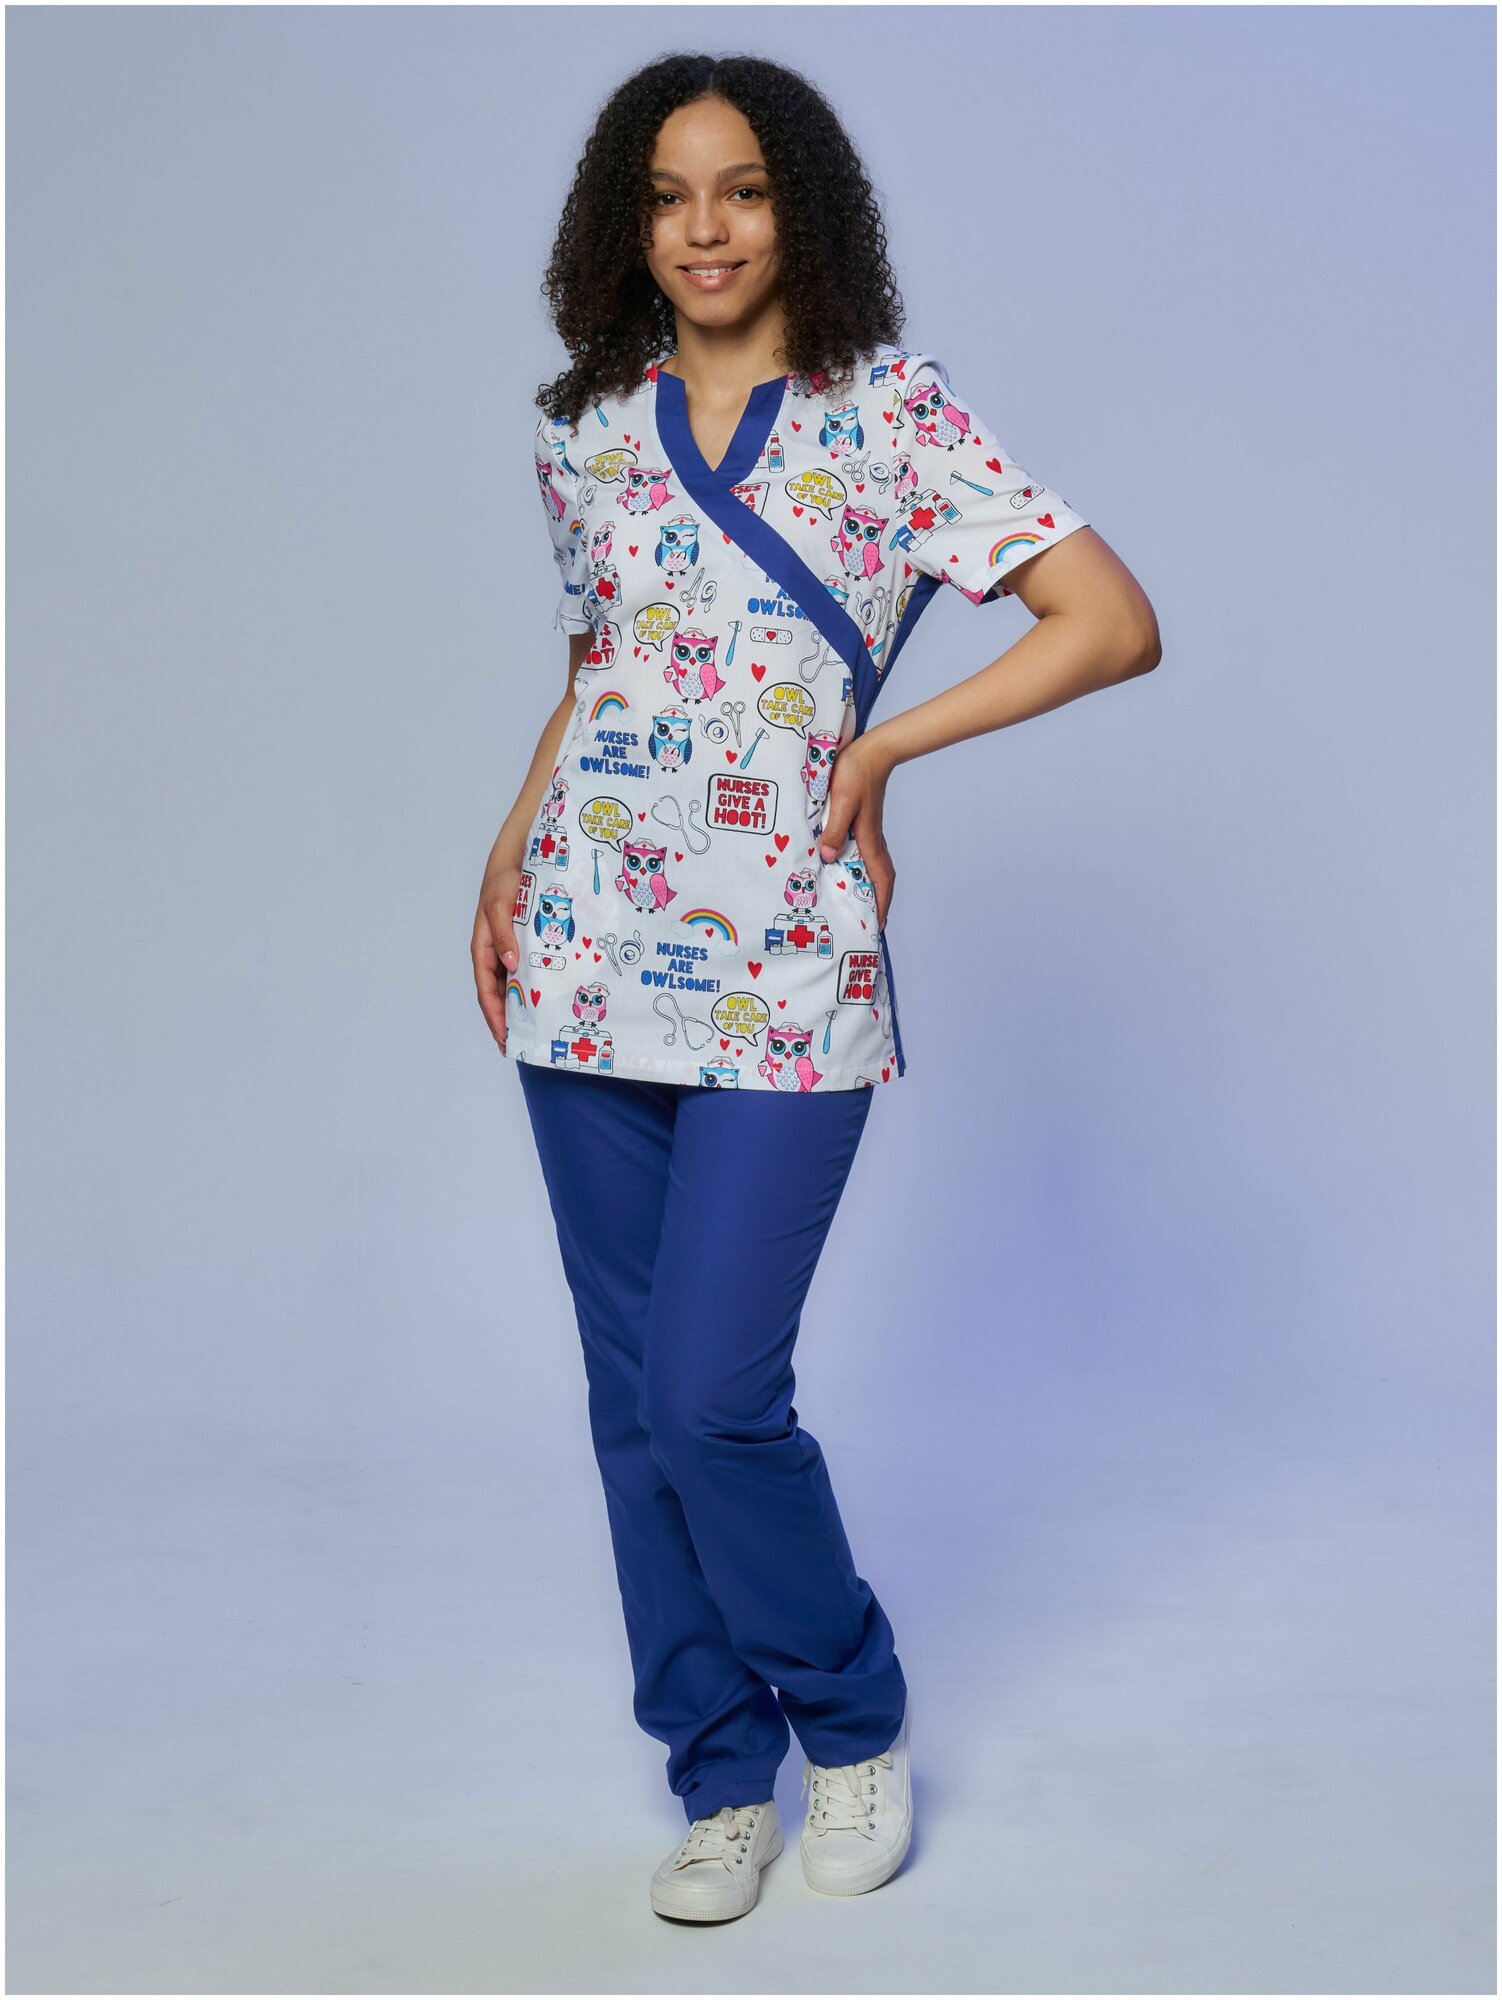 Медицинский костюм Альба-С женский с принтом синий. Хирургический костюм с рисунком голубой больших размеров. Спецодежда для женщин (блуза с брюками). Рабочий комплект одежды для врача. Размер 42